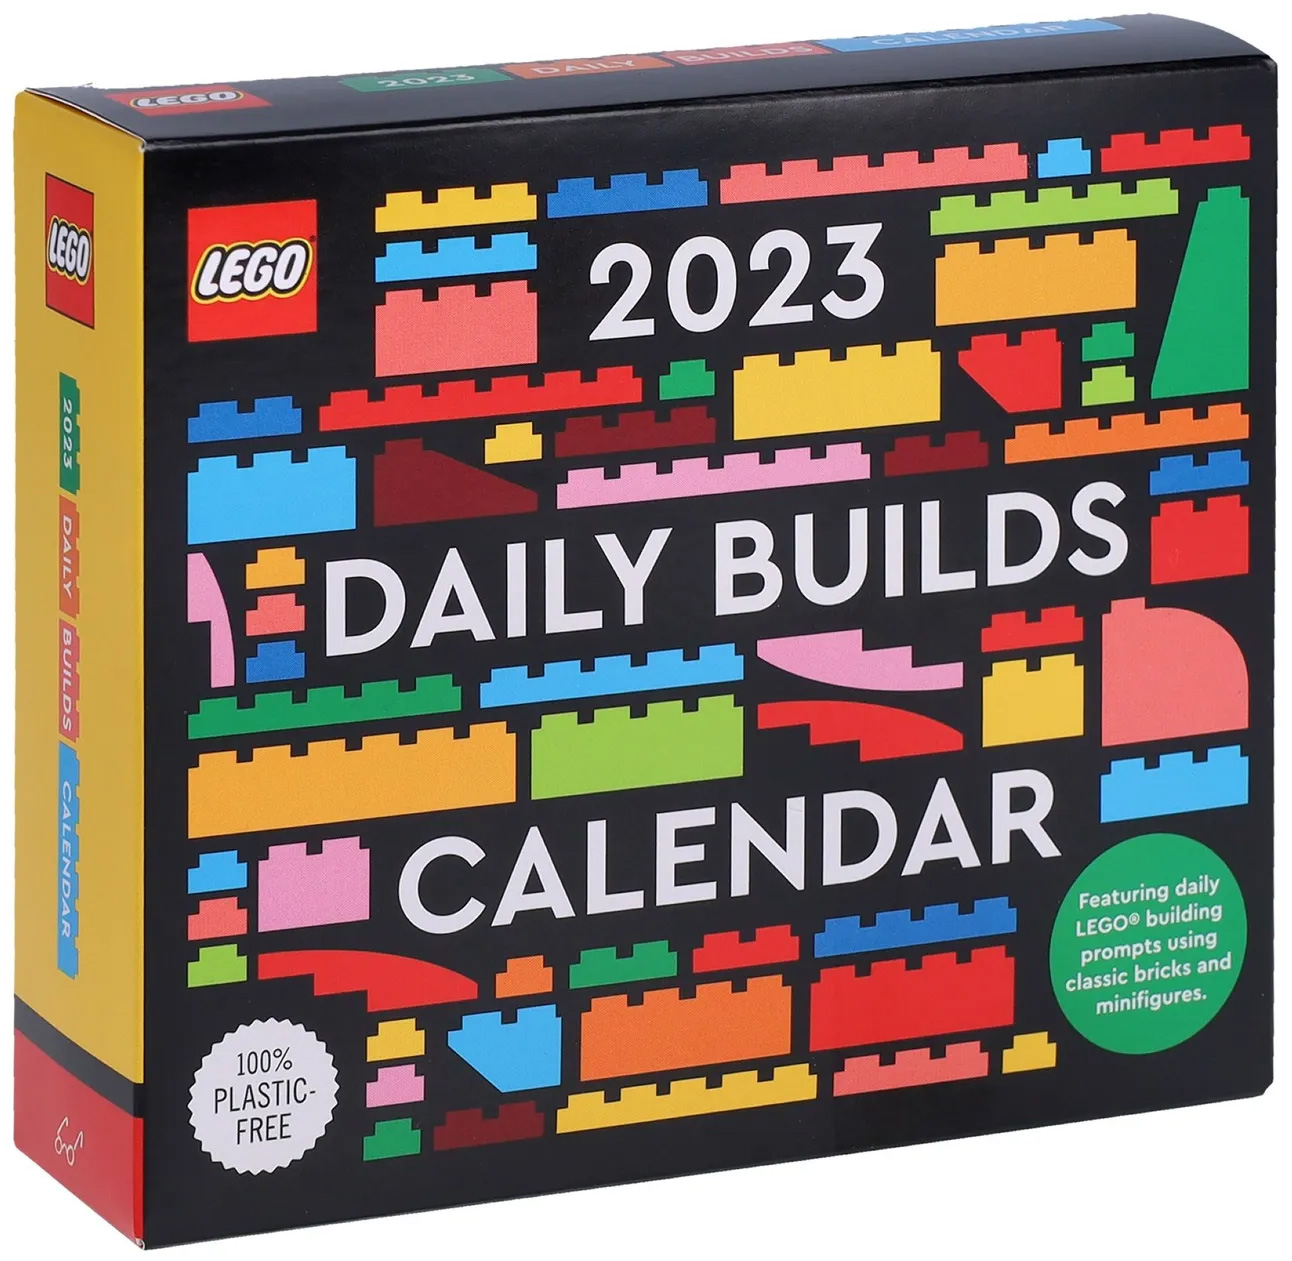 LEGO Objets divers 5007617 pas cher, Calendrier journalier 2023 :  constructions LEGO quotidiennes